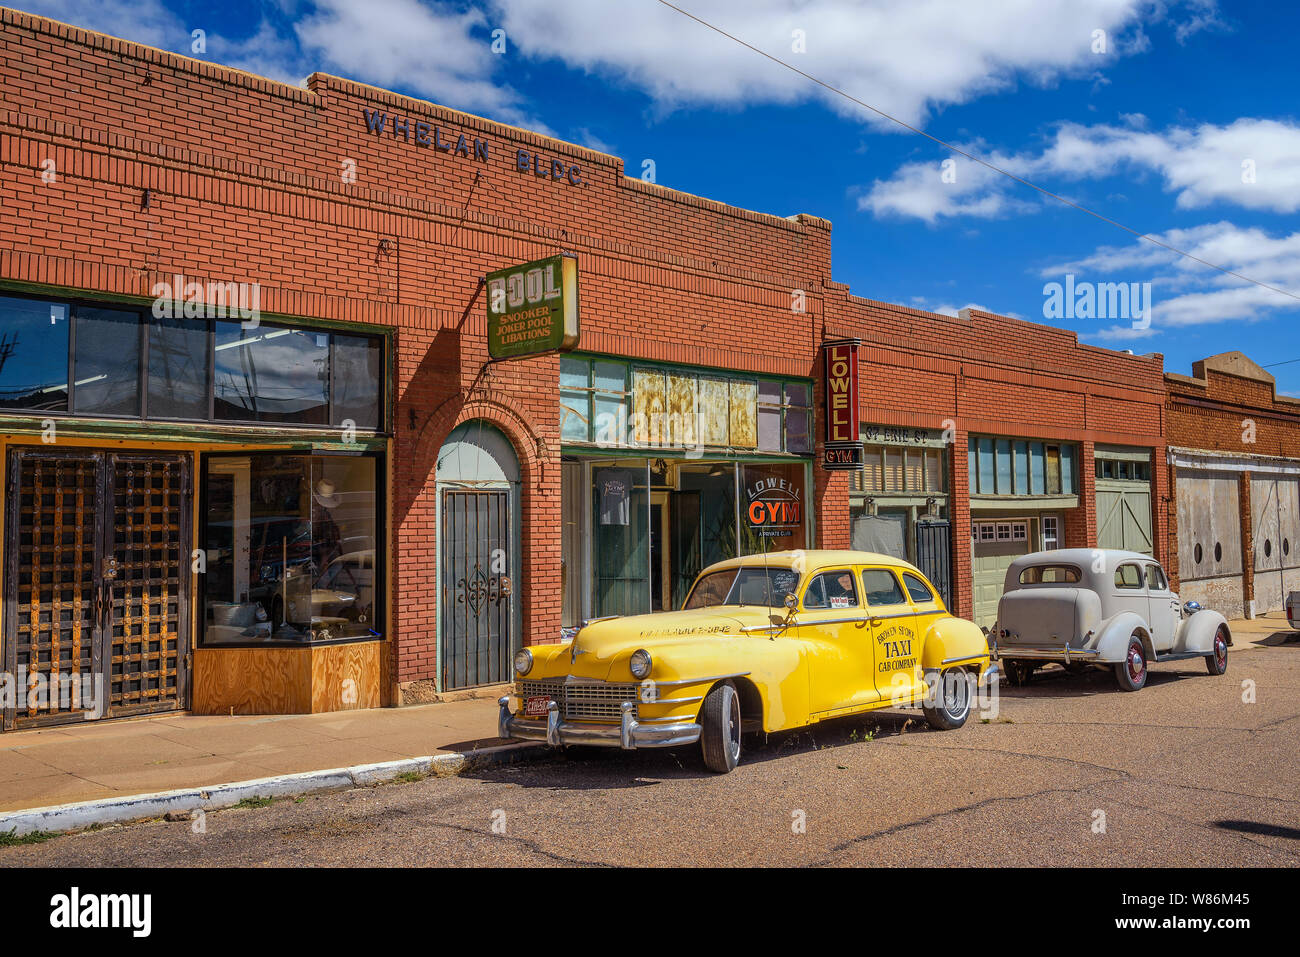 Historischen Erie Street in Lowell, jetzt Teil von Bisbee, Arizona Stockfoto